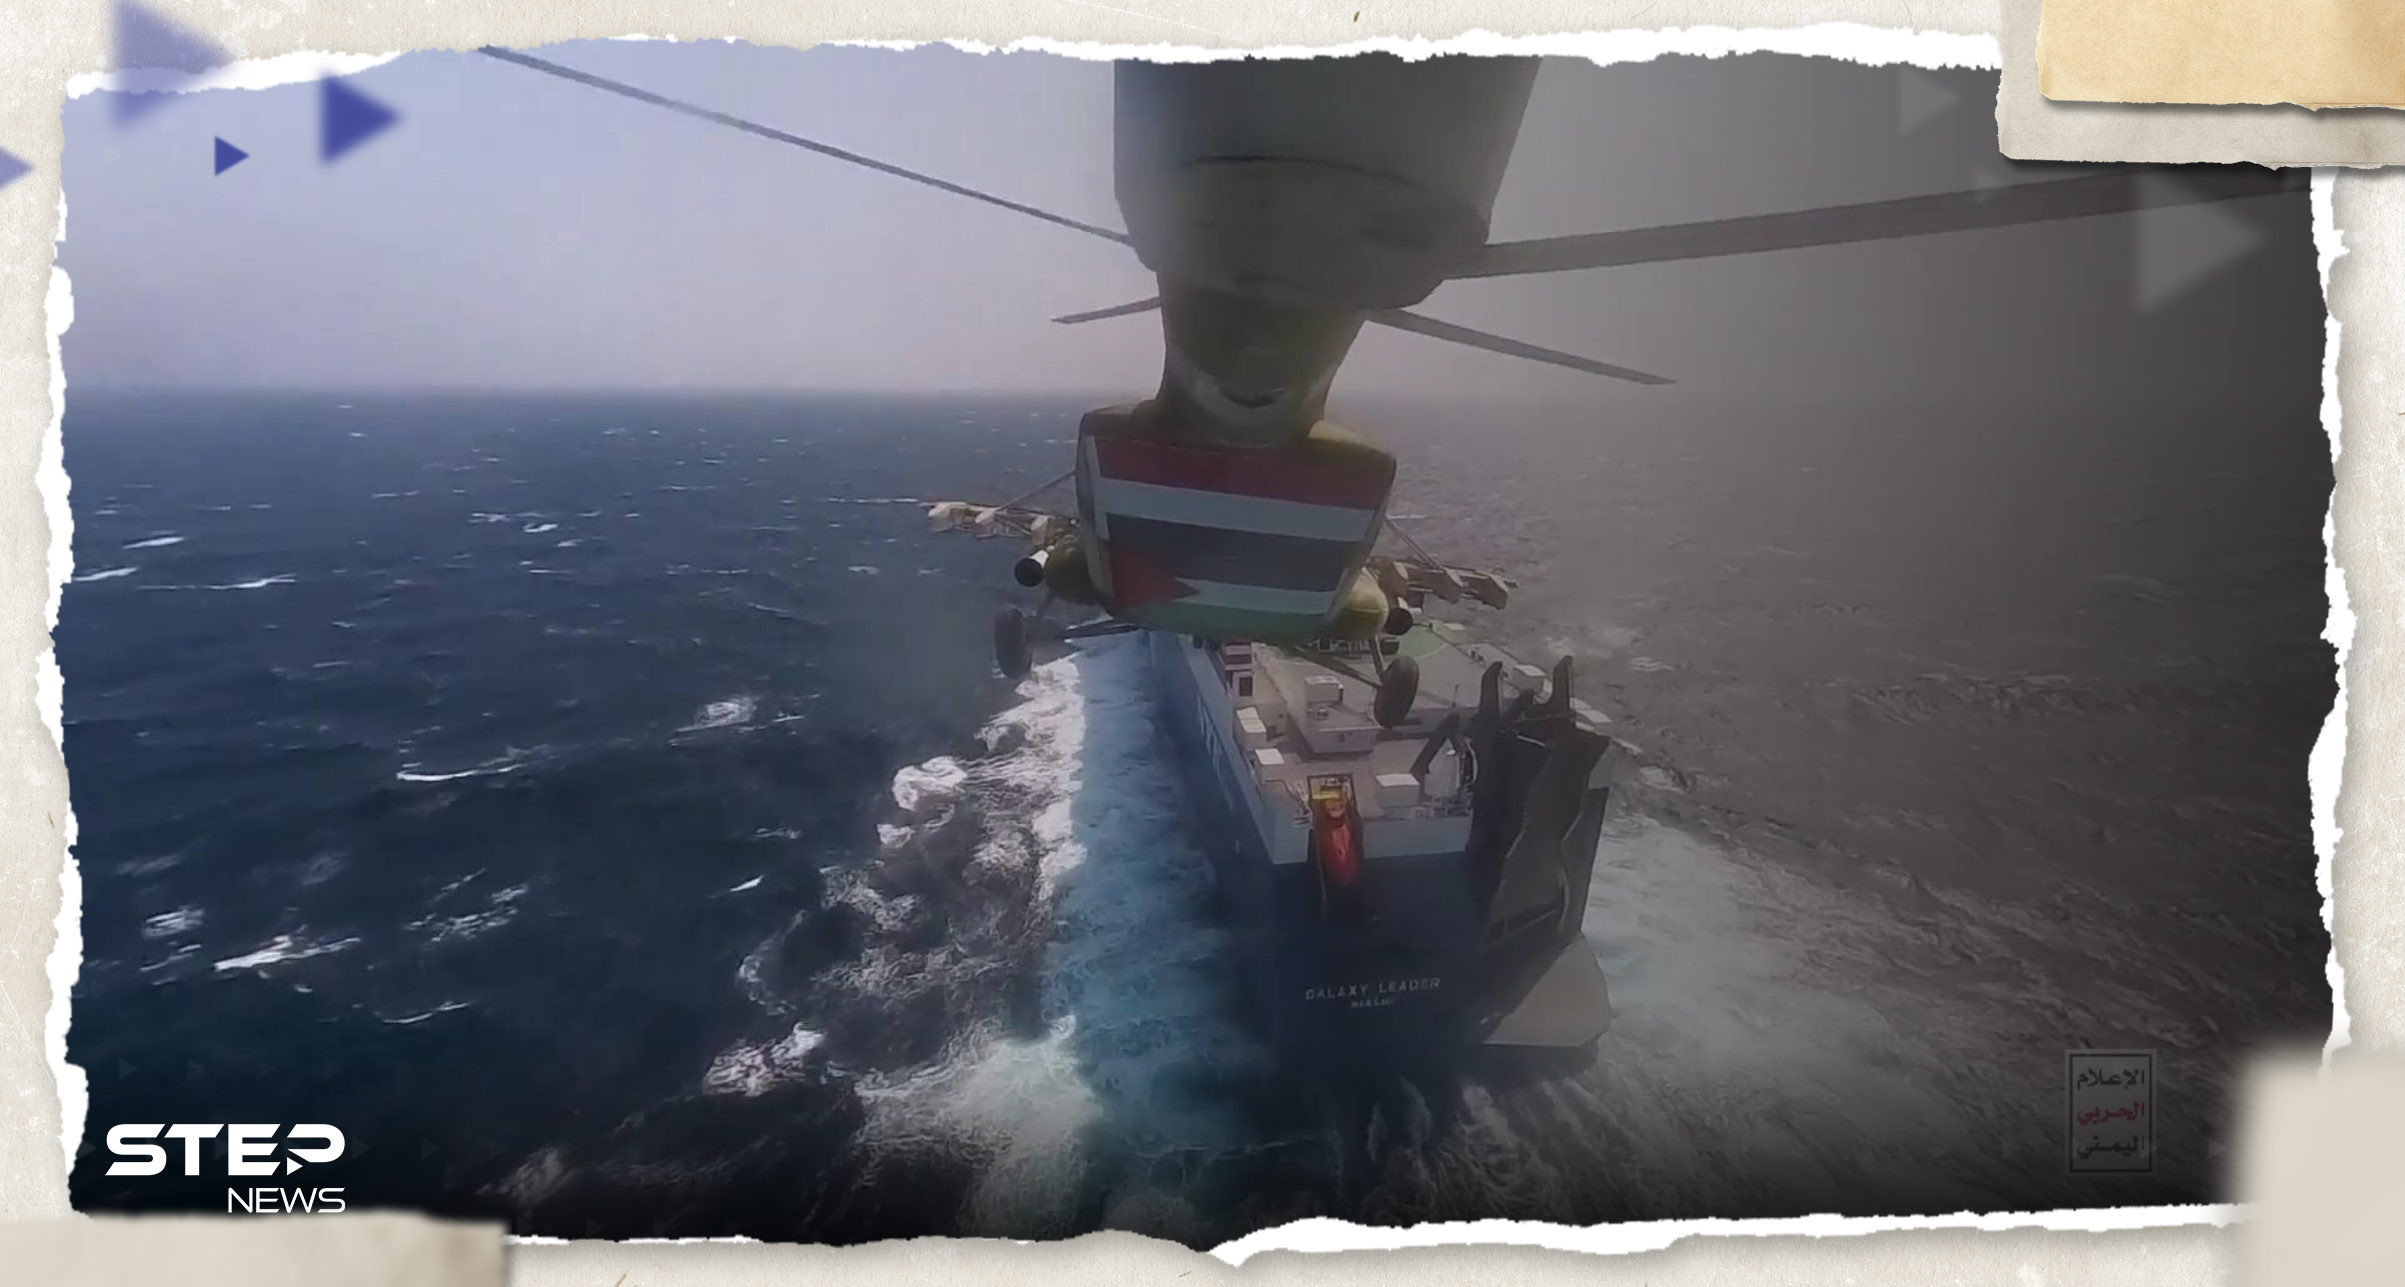 بالفيديو|| لحظة إنزال الحوثيين على السفينة في البحر الأحمر واحتجازها 